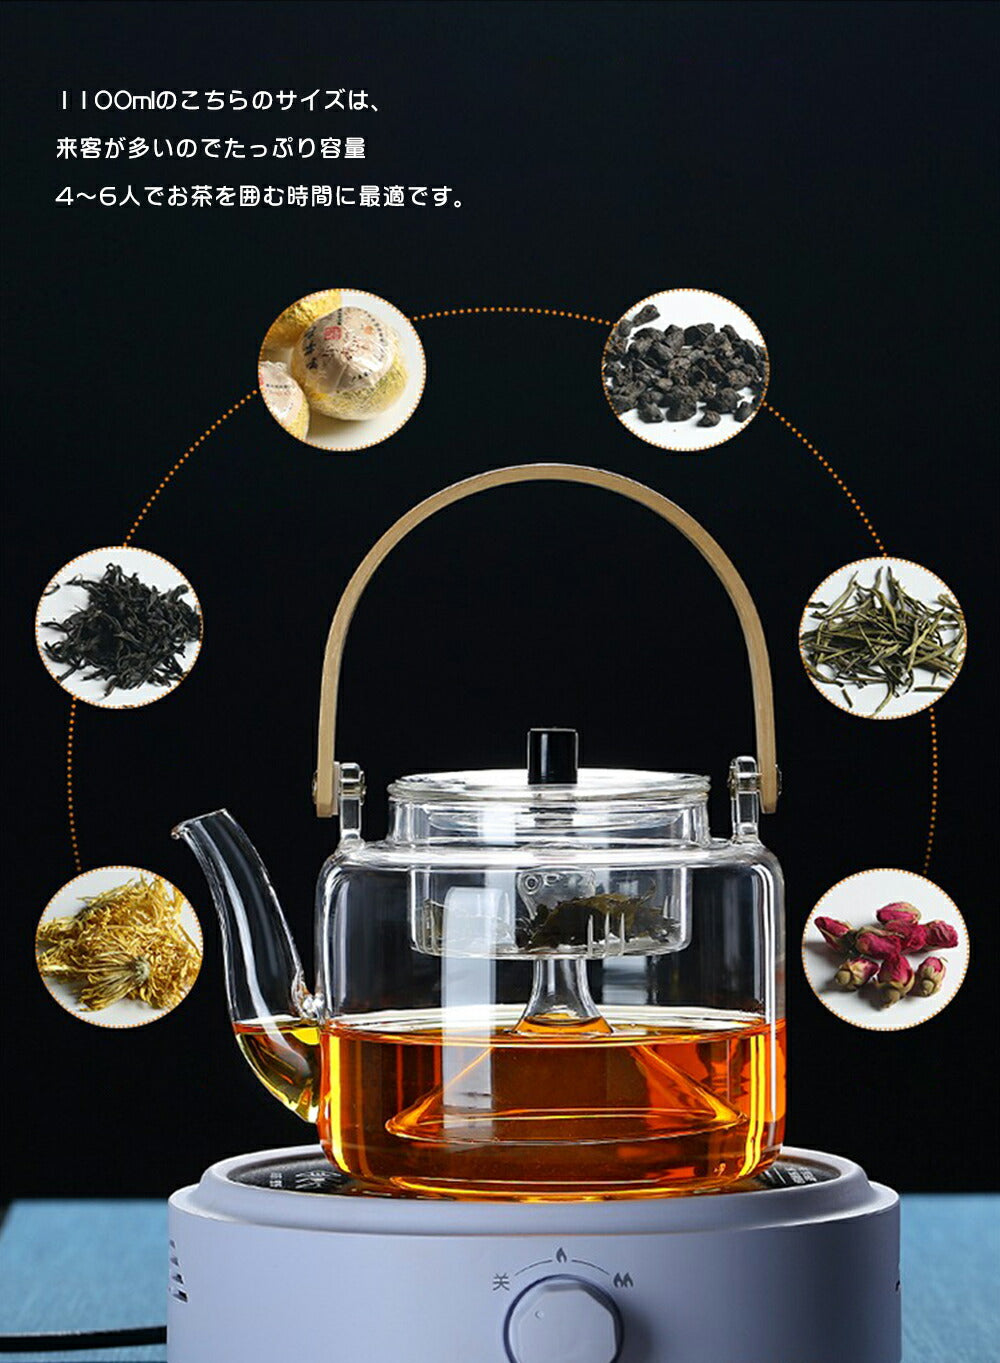 IwaiLoft 手作り 耐熱ガラス ティーポット 茶こし付き ガラス製ポット 木製 竹製 持ち手 ジャンピング 紅茶ポット フルーツティー リーフティー 花茶 工芸茶 ハーフティー に 直火可 大容量 IL-G1968 (平光, 1100mL)